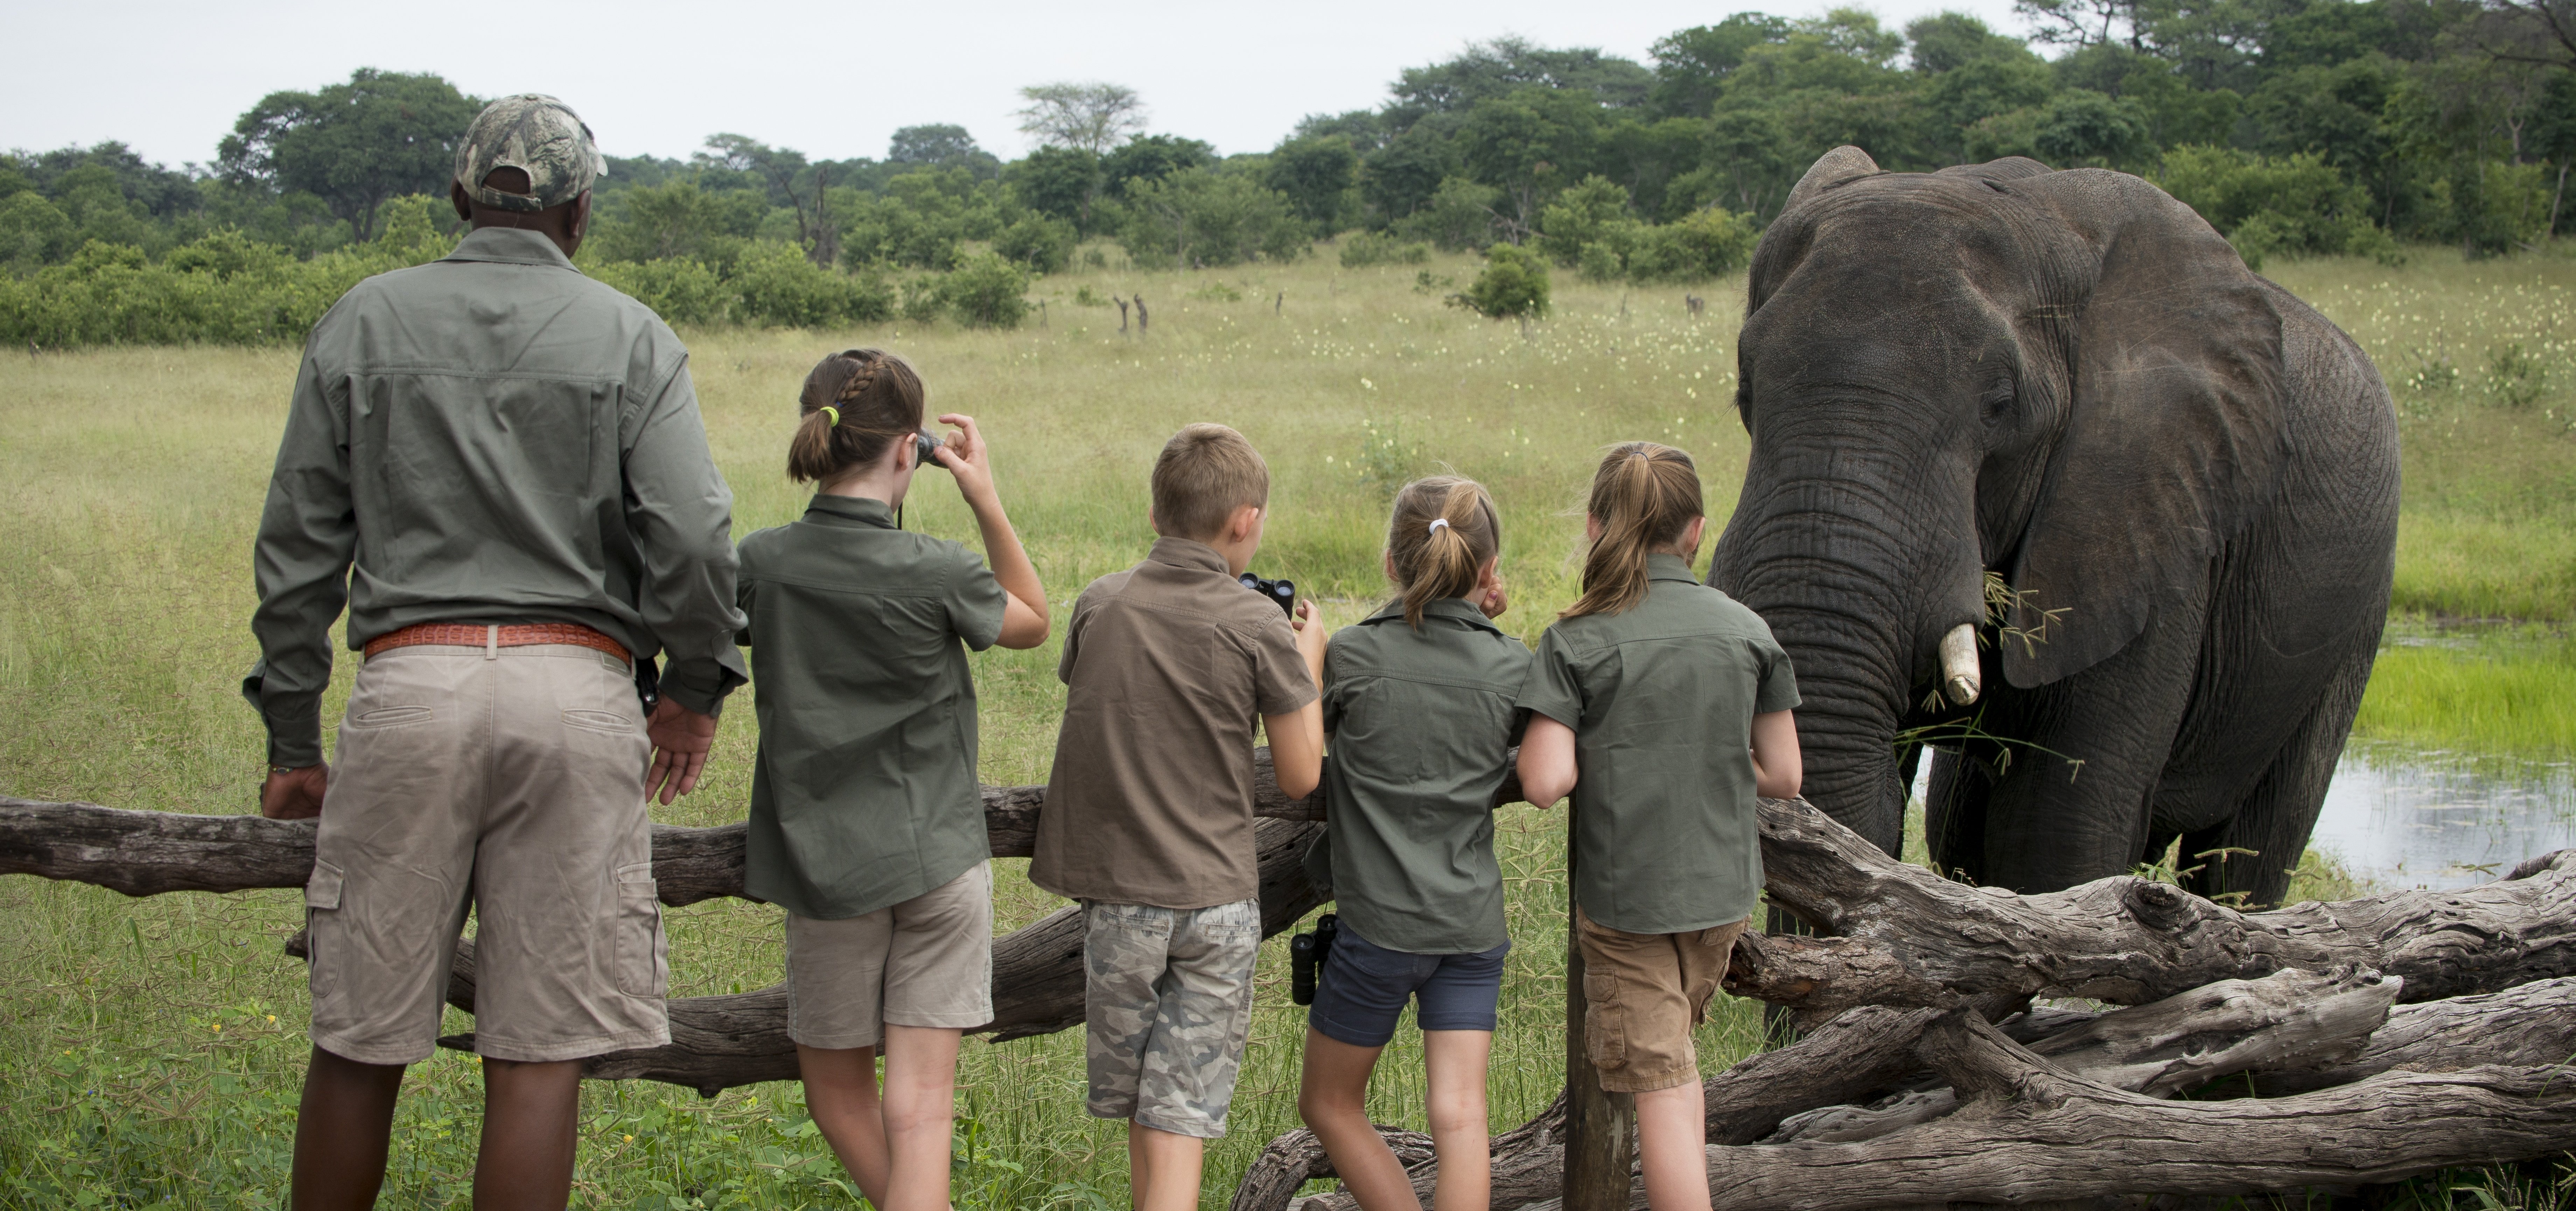 Somalisa Acacia Hwange National Park Zimbabwe Luxury Safari Camp African Bush Camps Children close encounters with elephants (14)-190303-edited